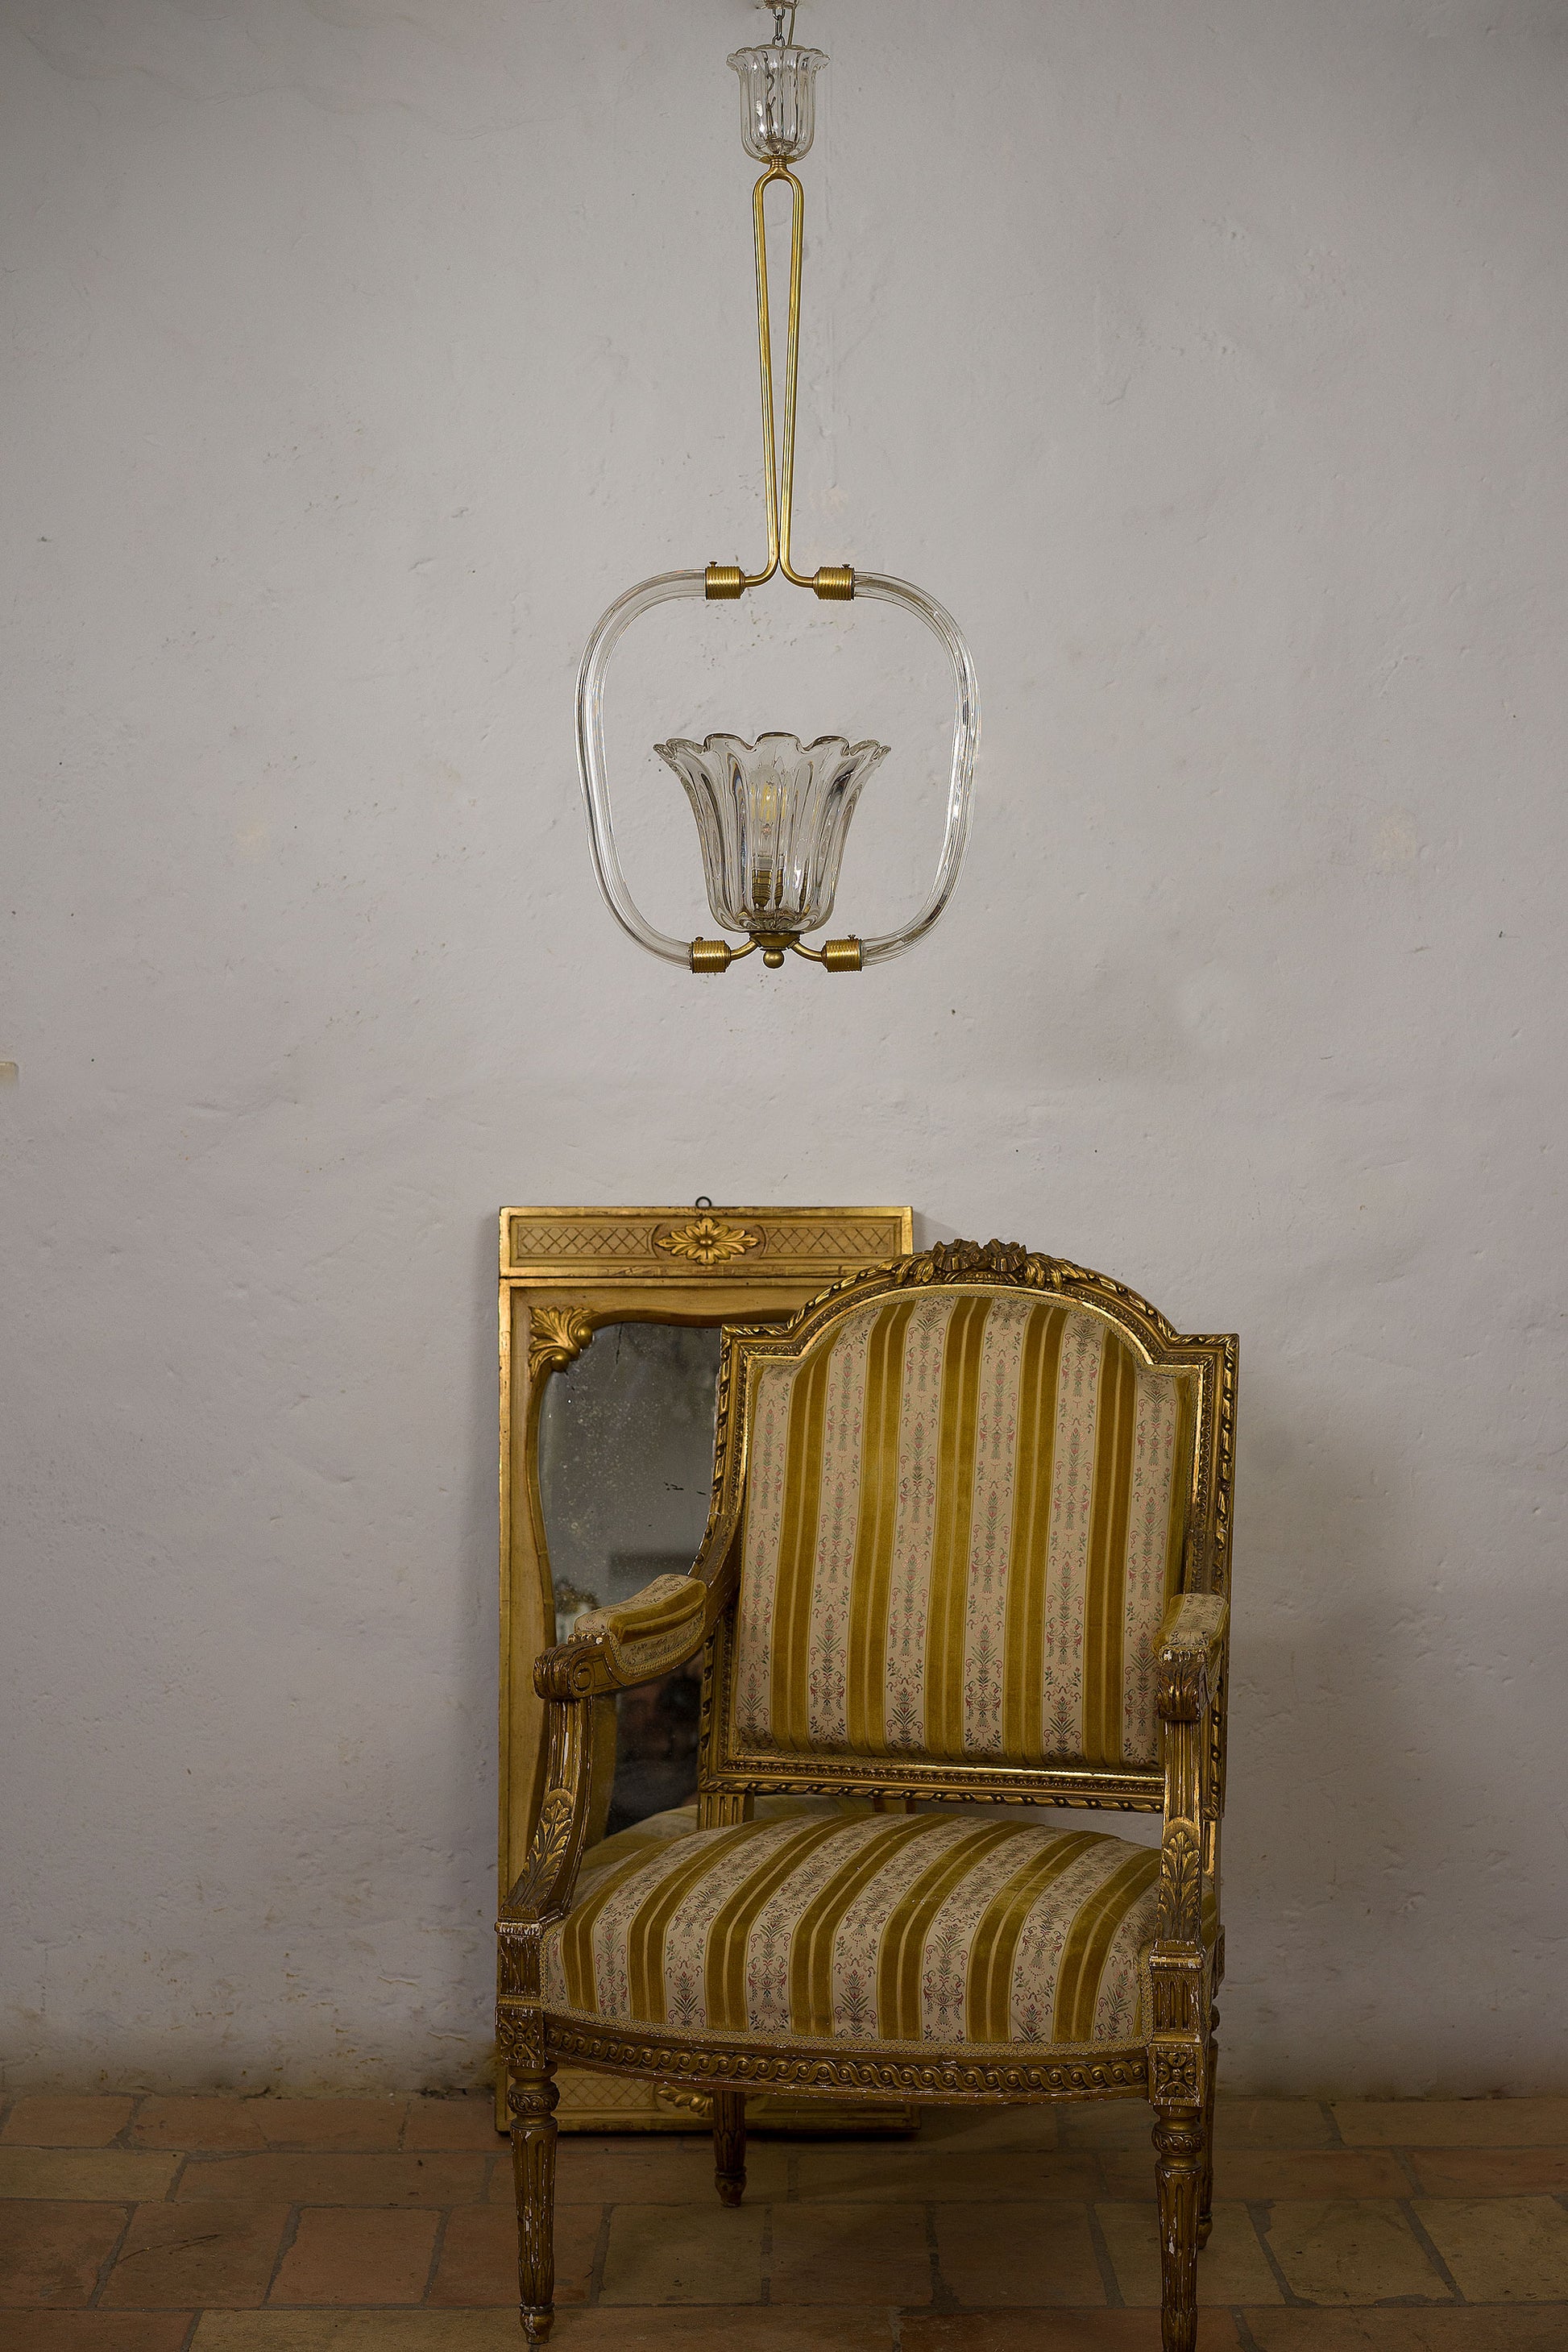 Lampadario di Murano con coppa centrale di vetro rigadin, telaio in vetro di Murano, asta centrlale in ottone e vetro di Murano. 1 luce centrale-Lo stile italiano